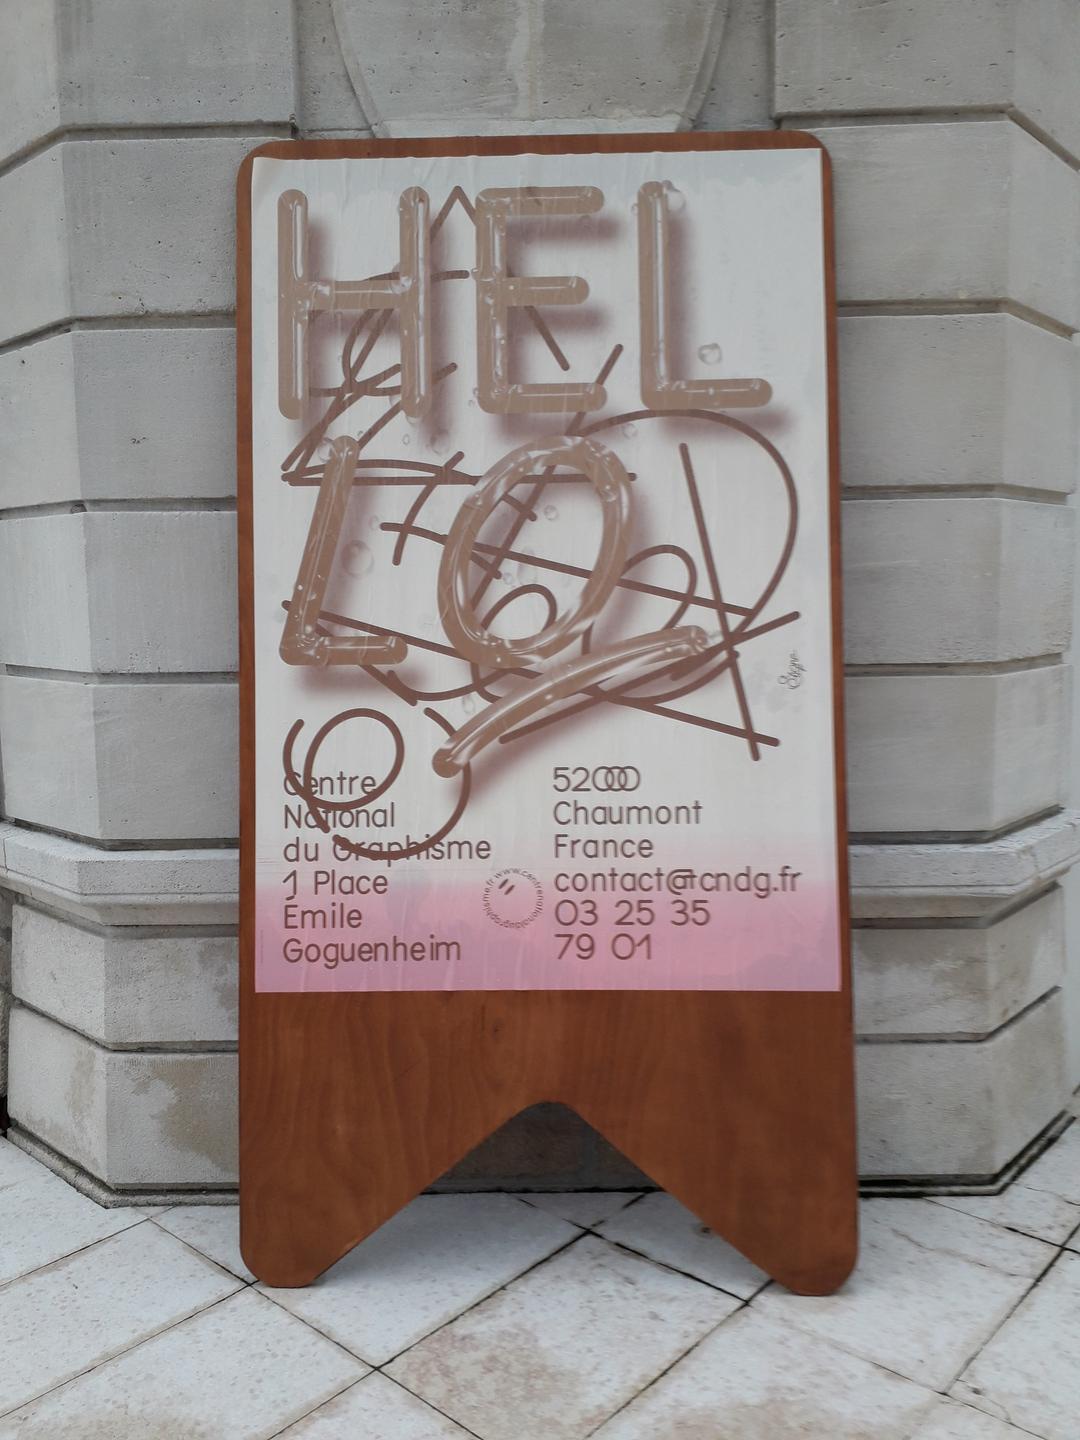 Image 1 : Affiche avec la mention Hello et les coordonnées du Signe, Centre national du Graphisme de Chaumont